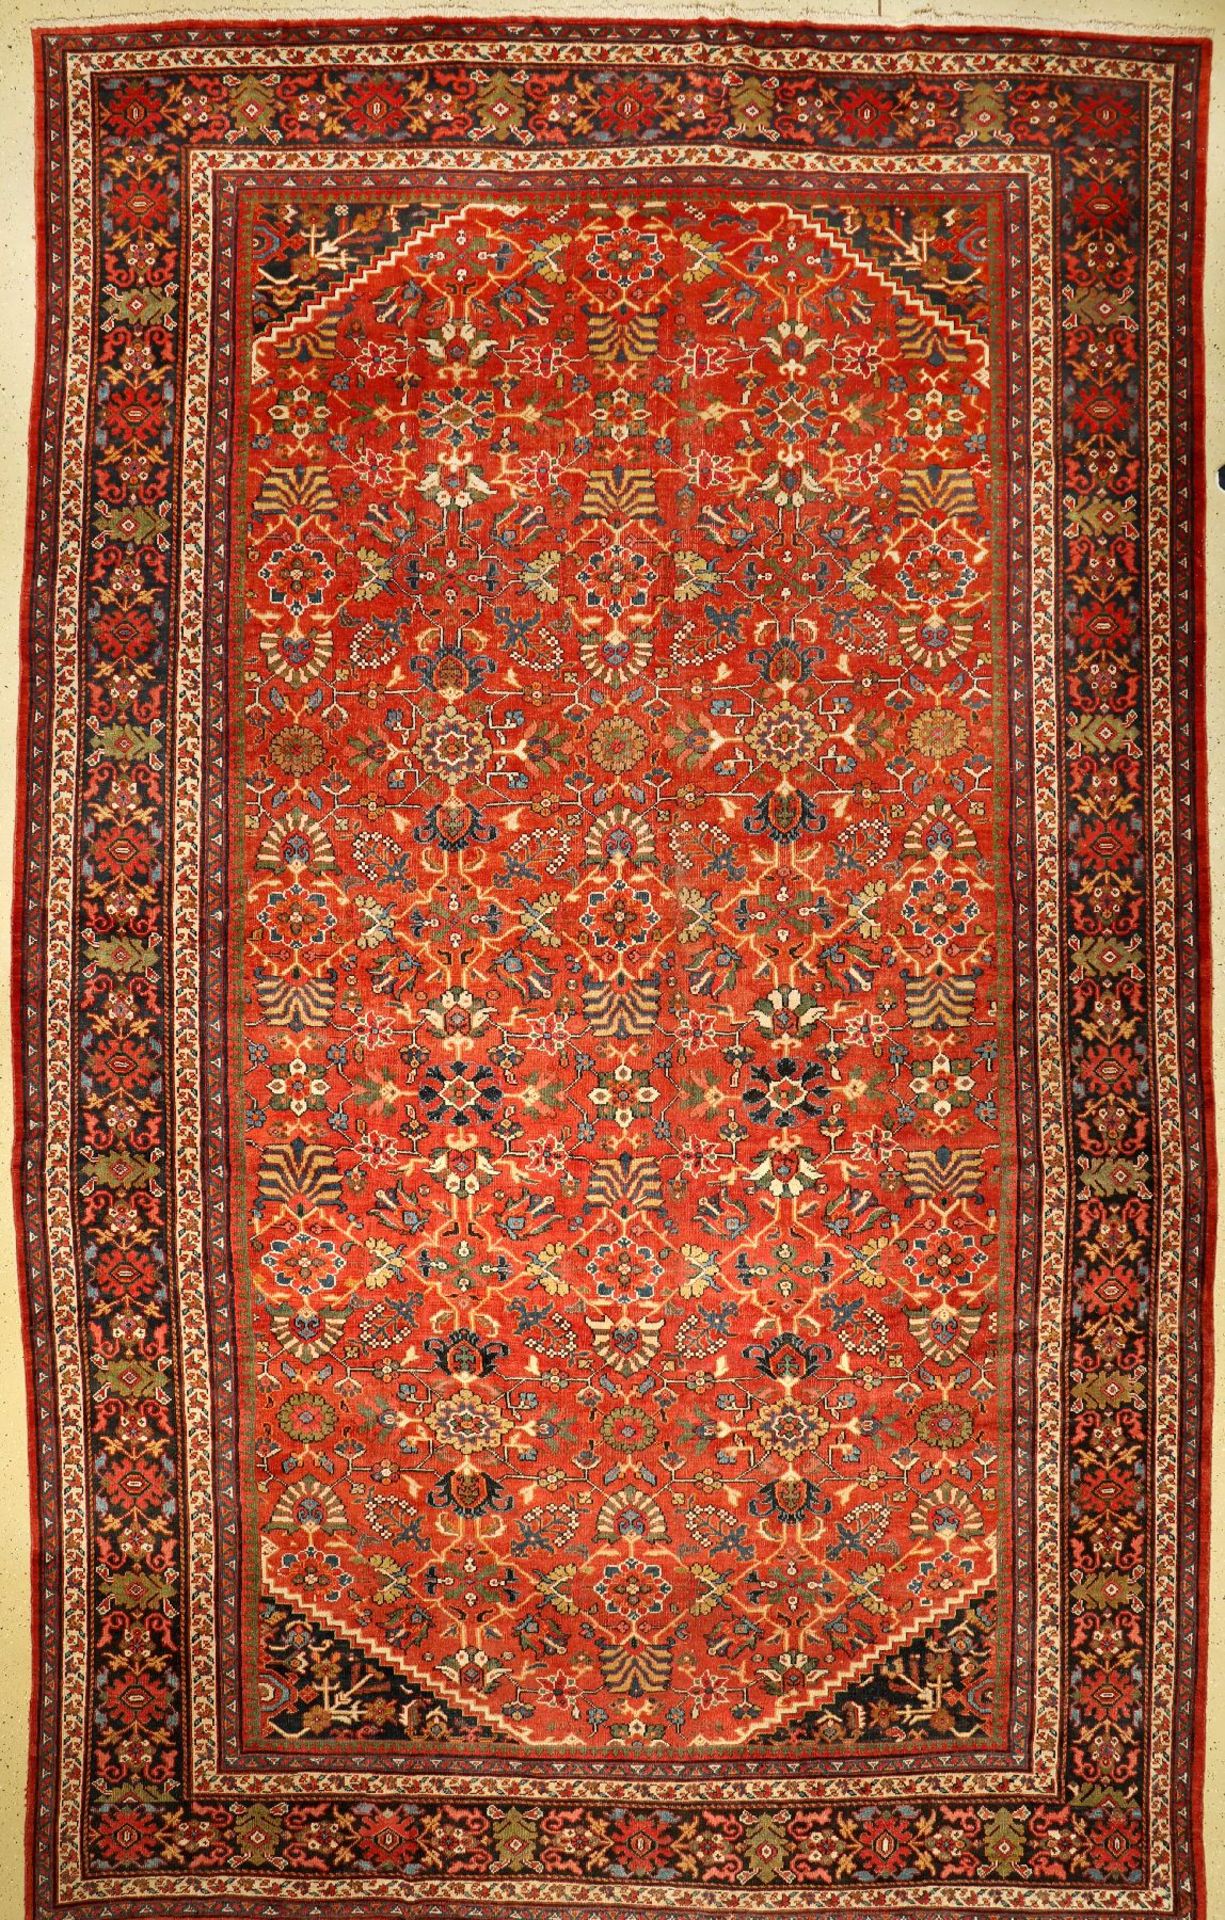 Großer Mahal antik, Persien, um 1900/1920, Wolle auf Baumwolle, ca. 525 x 320 cm, (Altersund